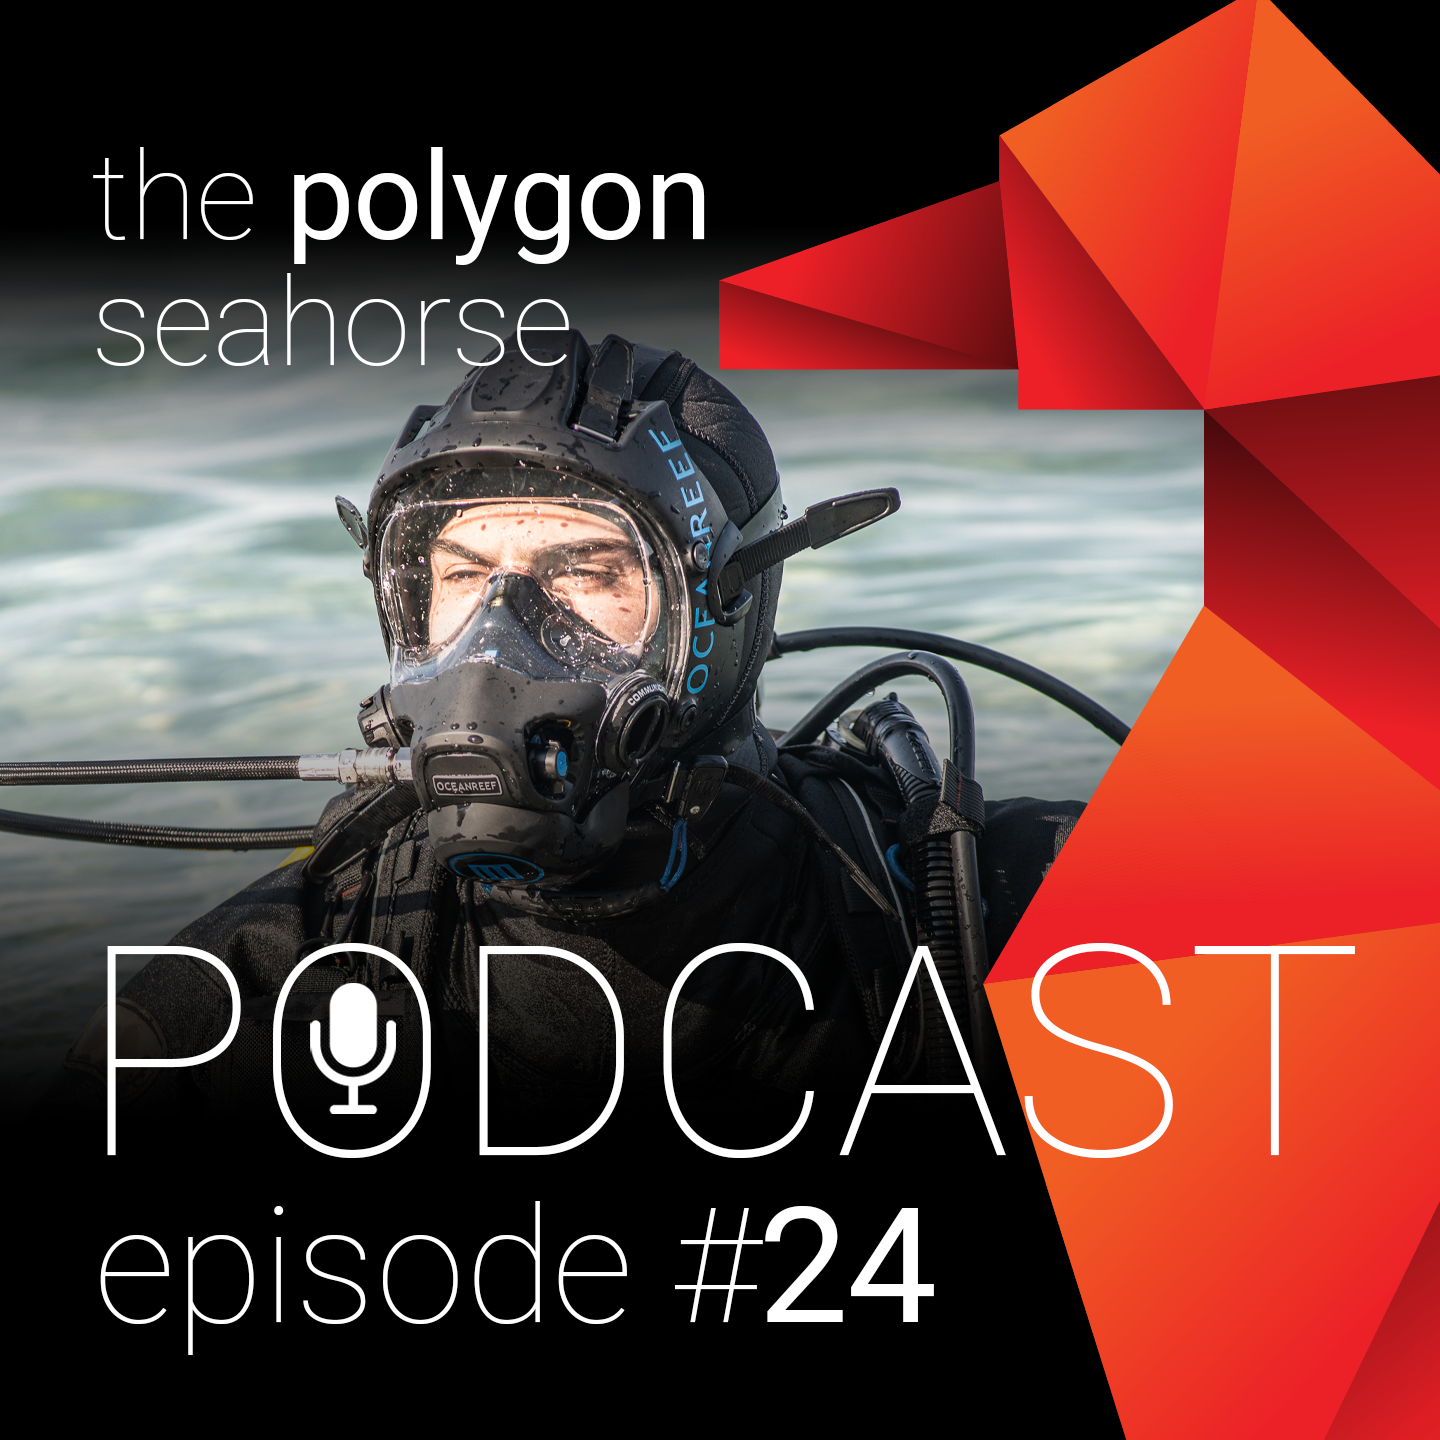 Smerig Ik denk dat ik ziek ben aantrekken Duiken met een volgelaatsmasker - Ocean Reef - the polygon seahorse podcast